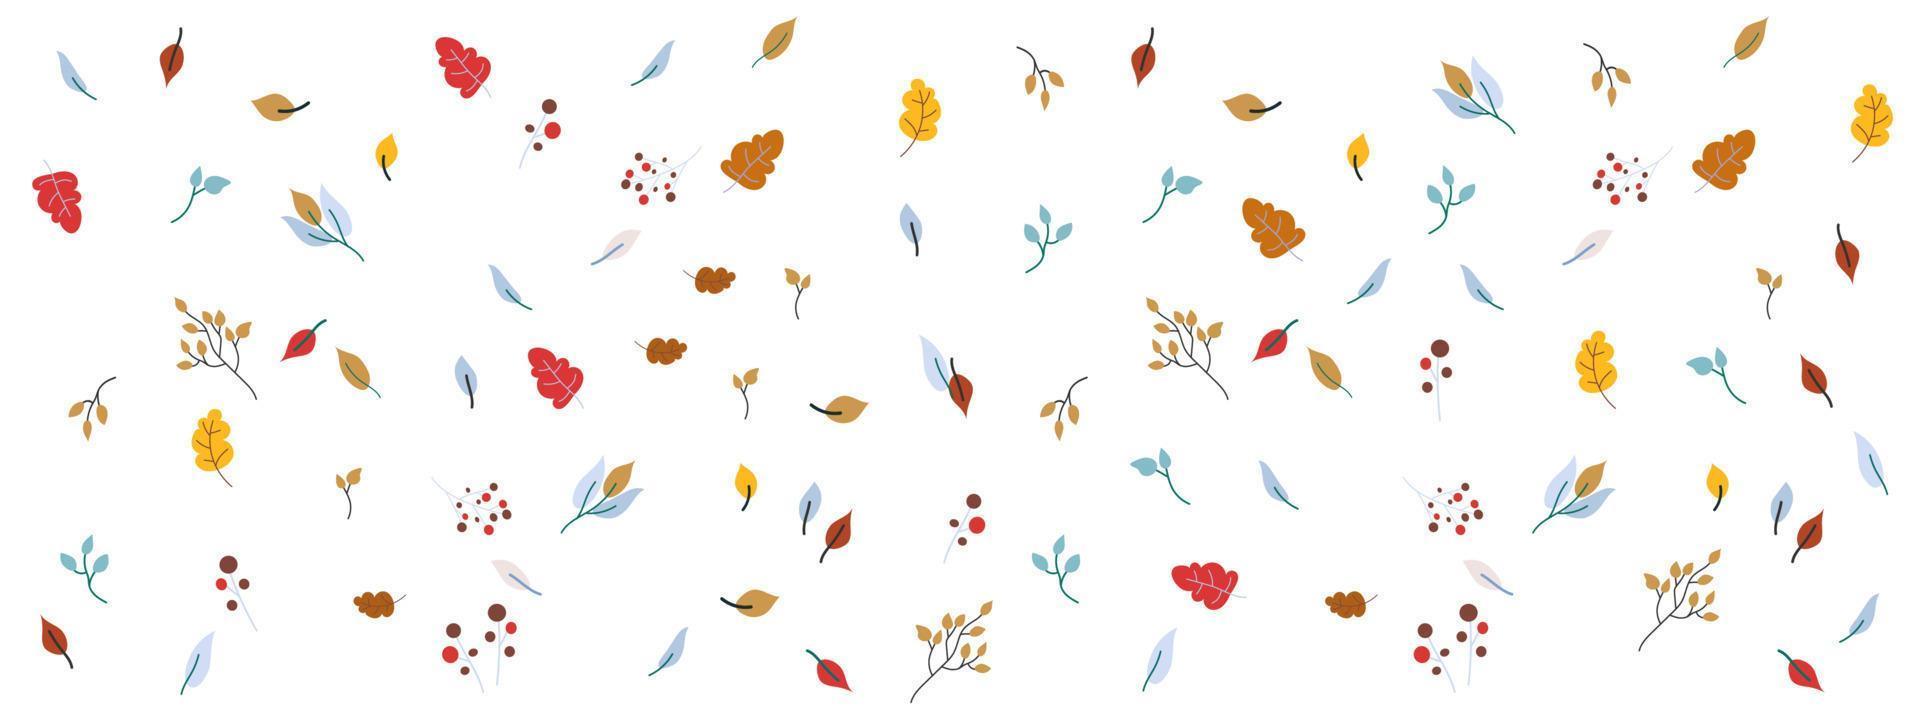 feuilles d'automne et baies fond illustration vectorielle vecteur